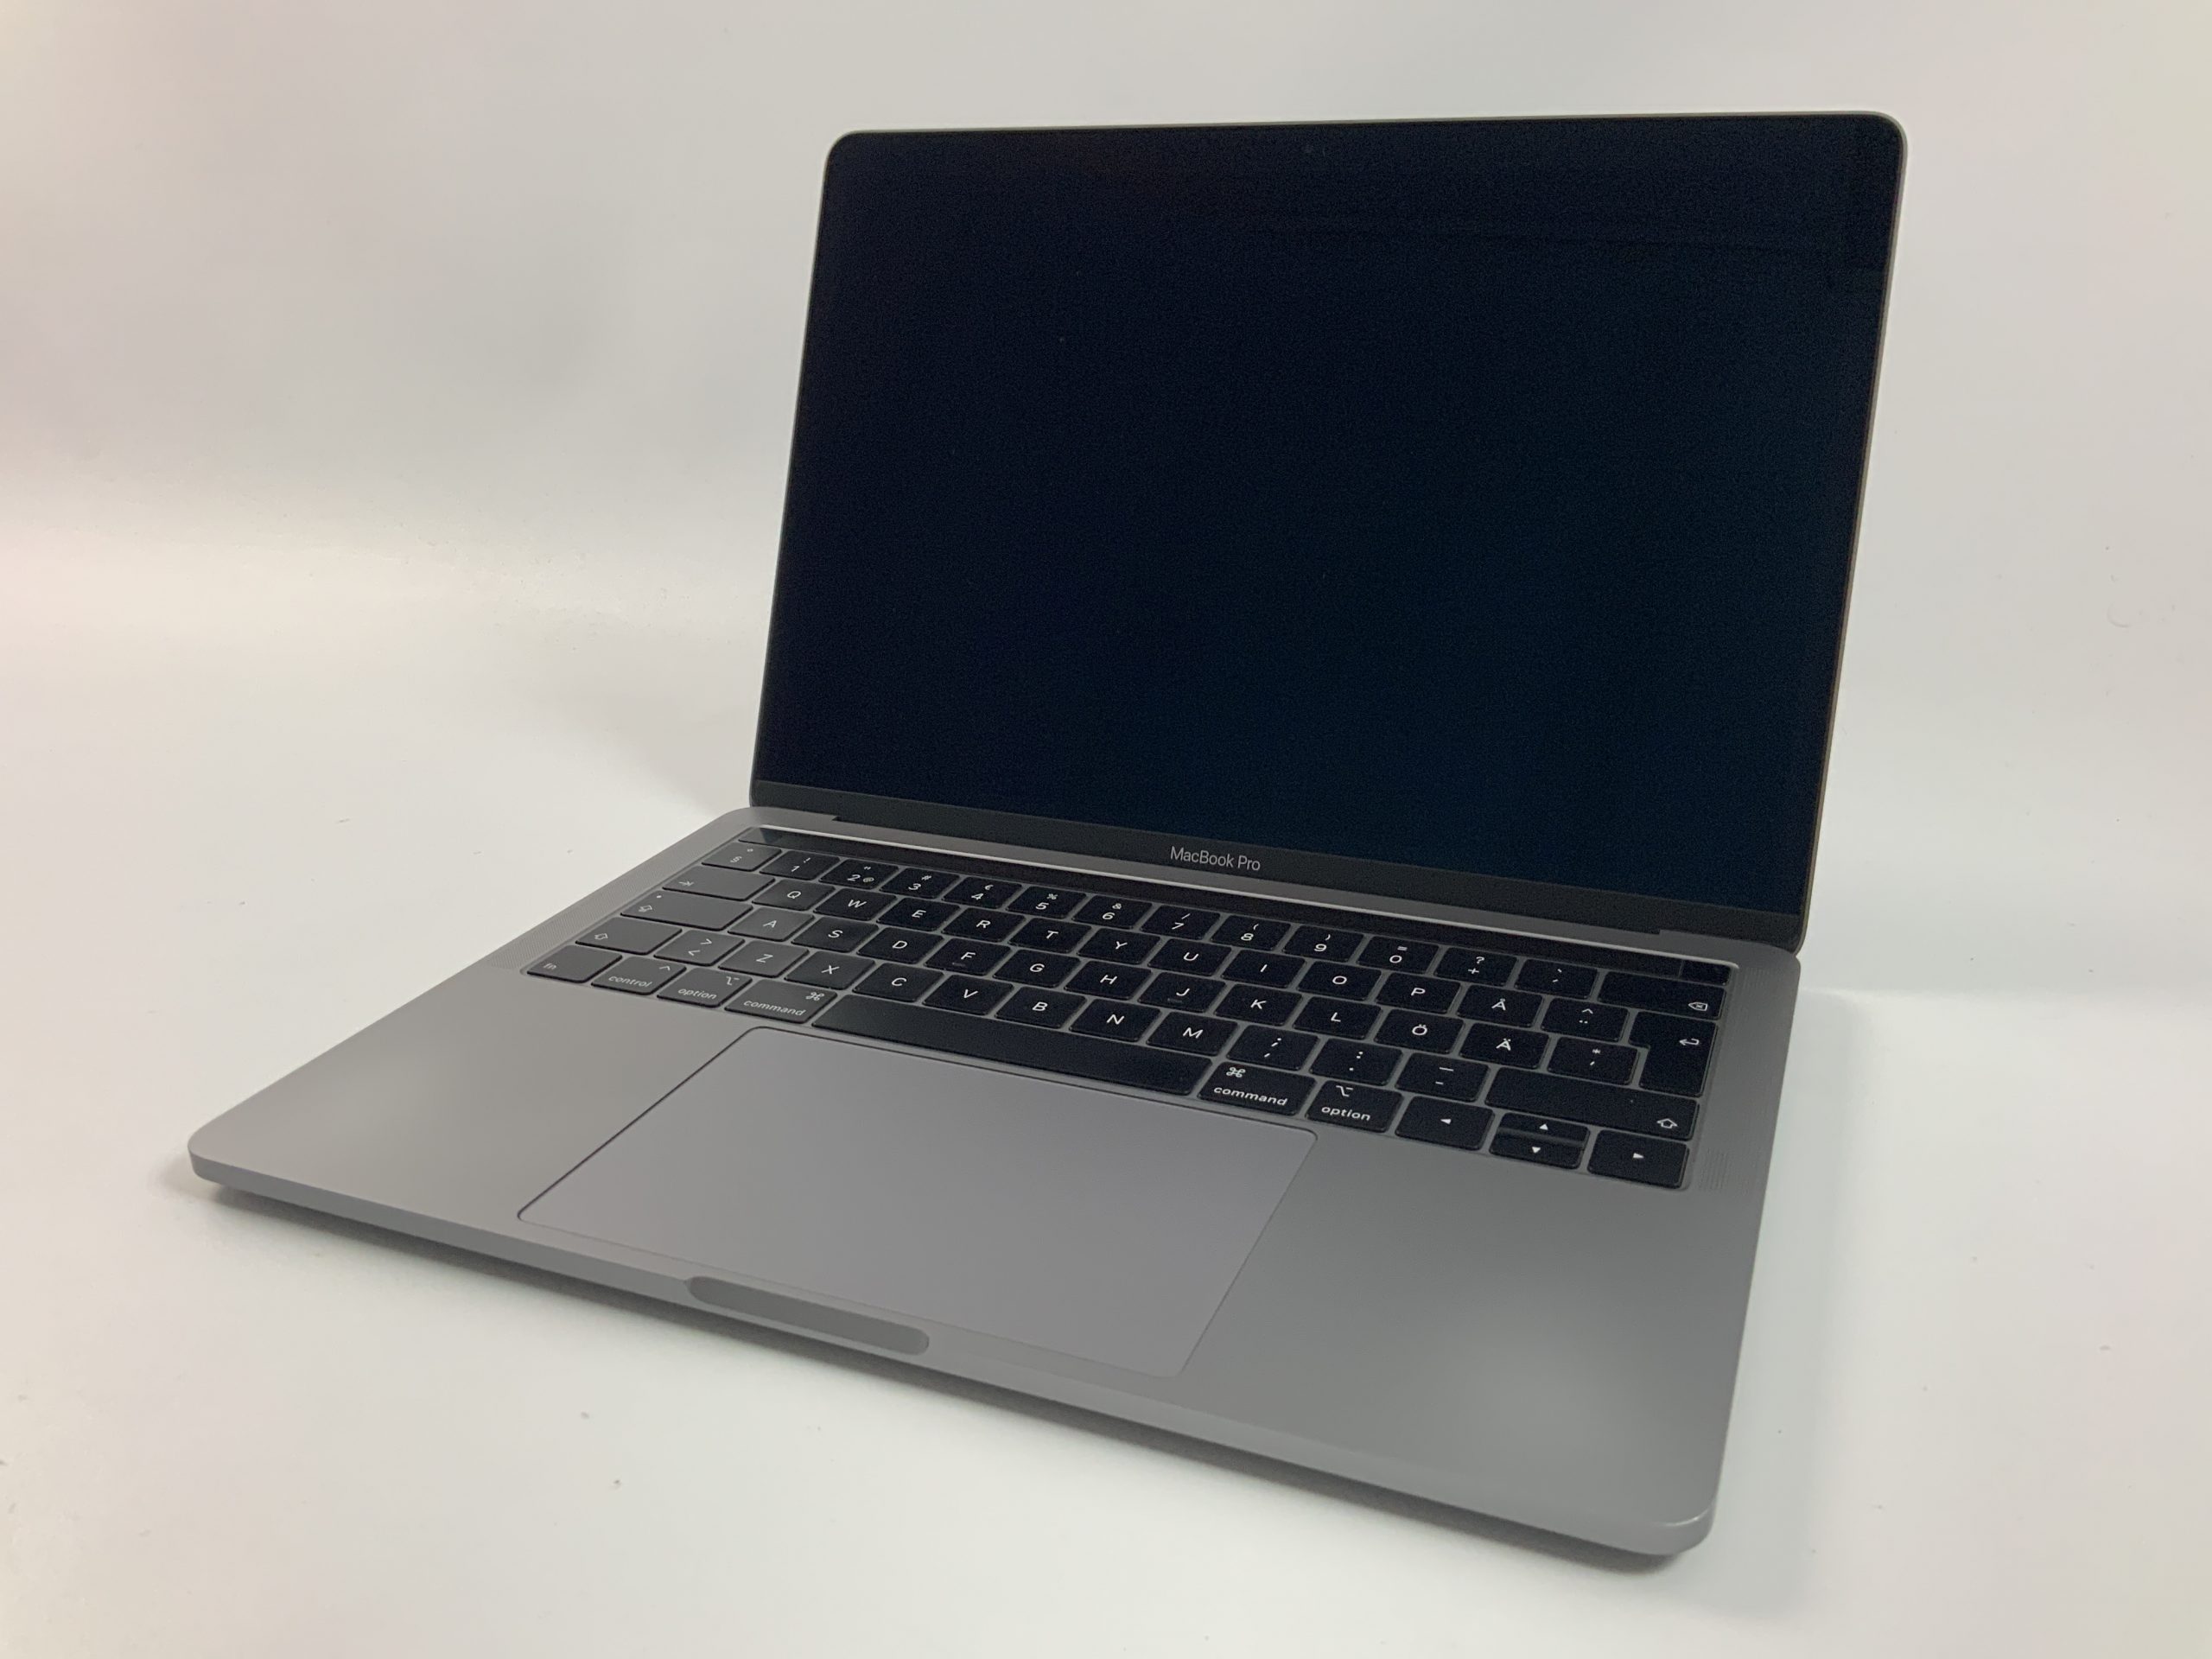 MacBook Pro 13" 4TBT Mid 2019 (Intel Quad-Core i7 2.8 GHz 8 GB RAM 256 GB SSD), Space Gray, Intel Quad-Core i7 2.8 GHz, 8 GB RAM, 256 GB SSD, image 1